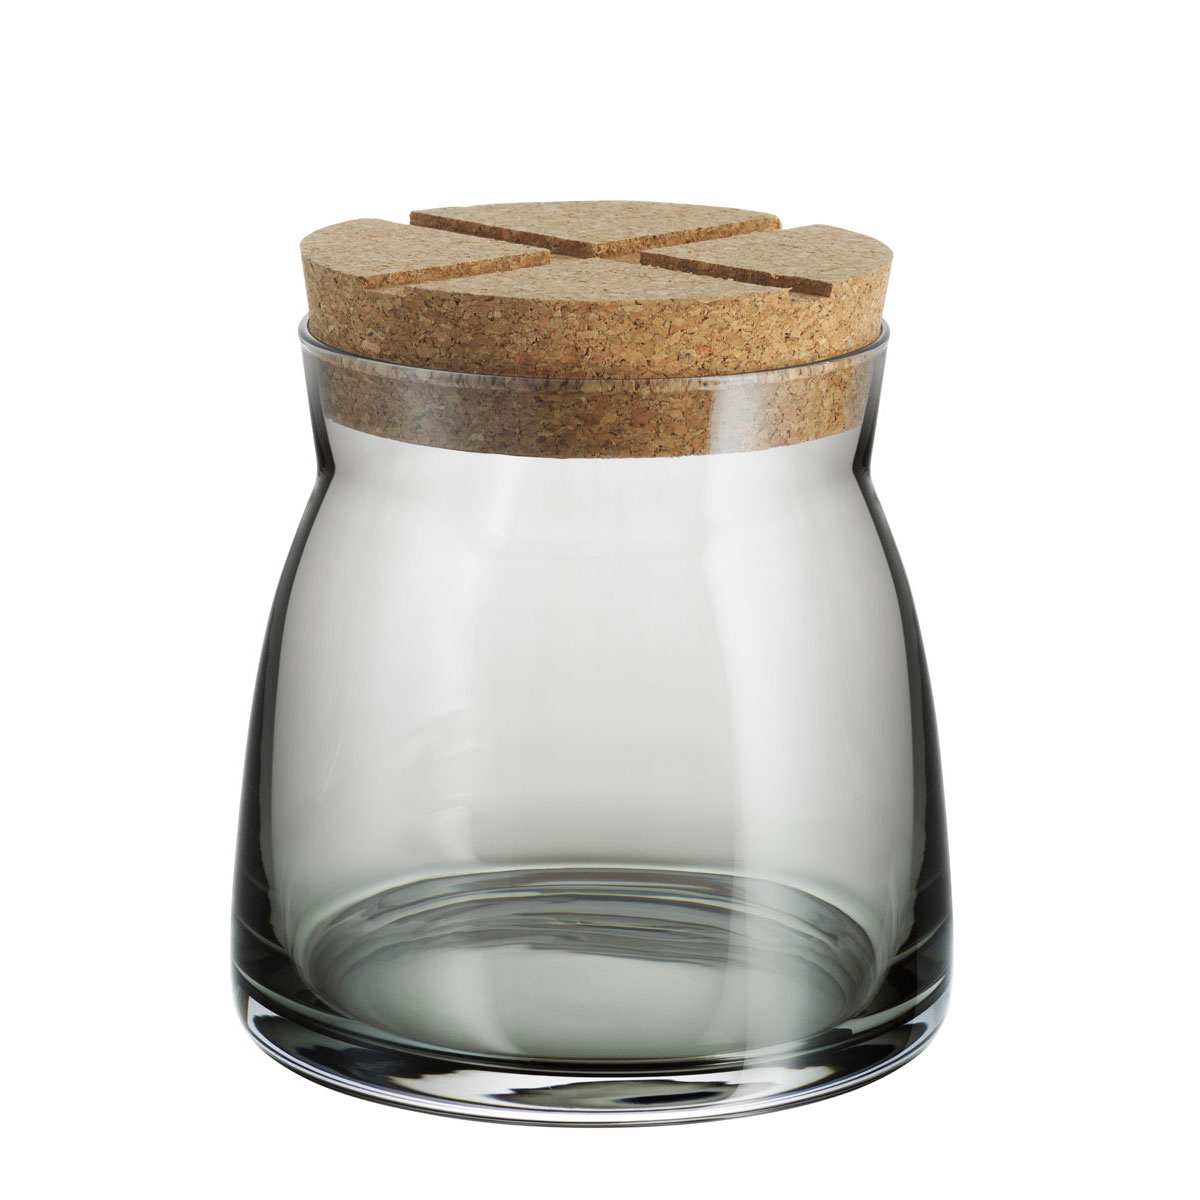 Kosta Boda Bruk Jar with Cork Grey, Medium